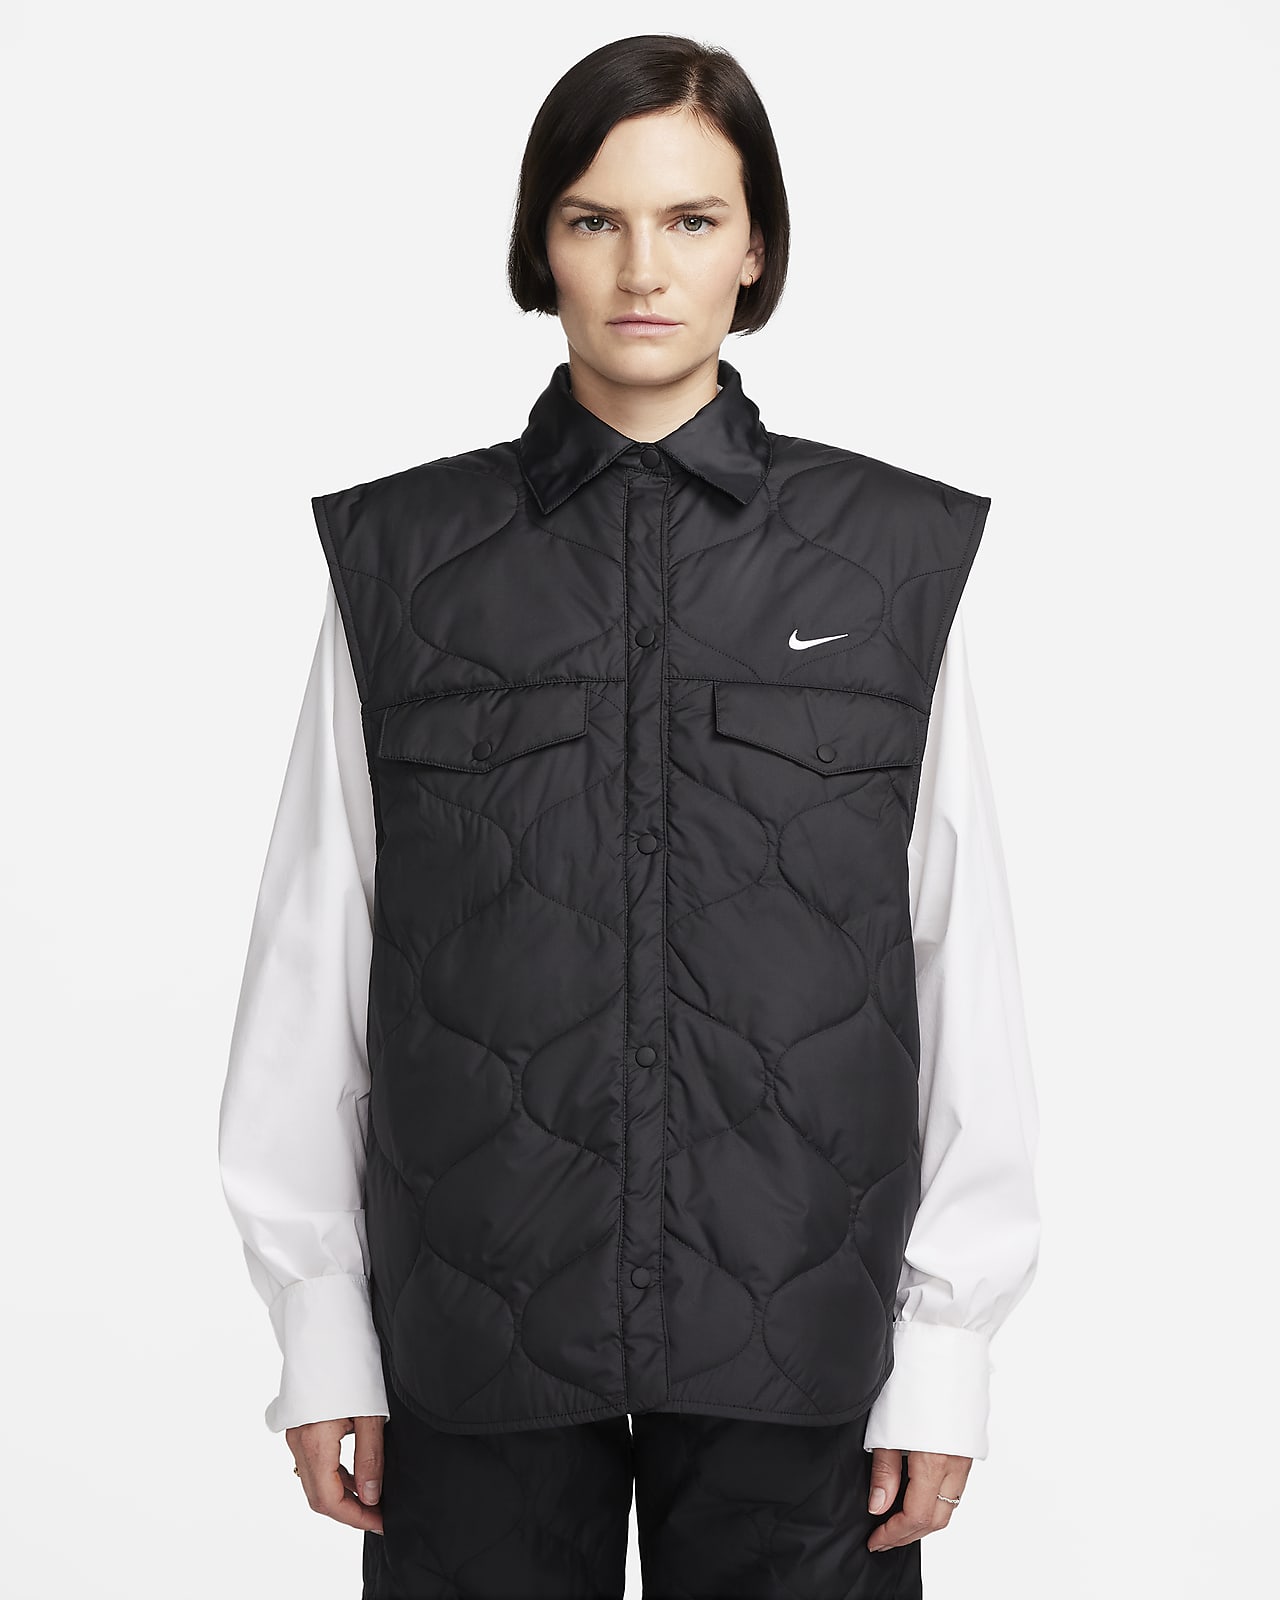 Väst Nike Sportswear Essential för kvinnor